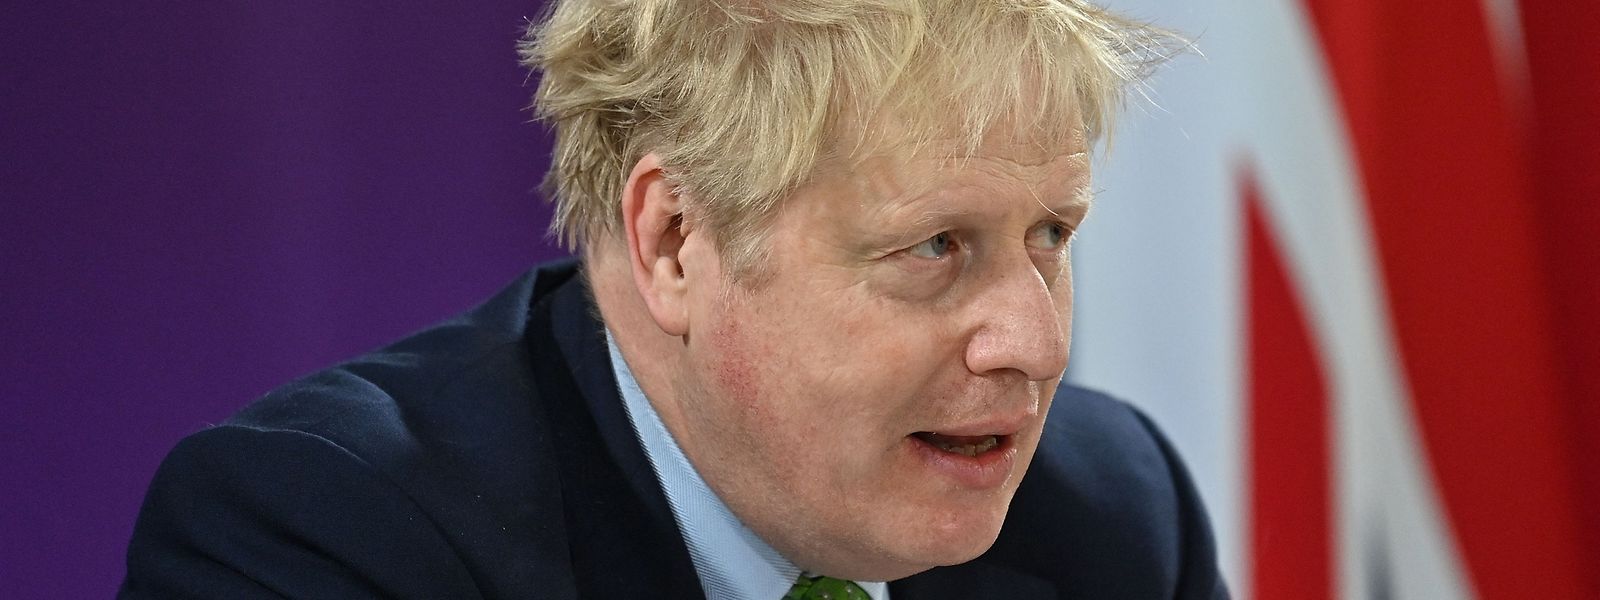 Der britische Premierminister Boris Johnson bedankte sich für die Hilfsbereitschaft seiner Landsleute. Die Regierung hingegen ist viel weniger großzügig, wenn es um die Aufnahme von ukrainischen Flüchtlingen geht.